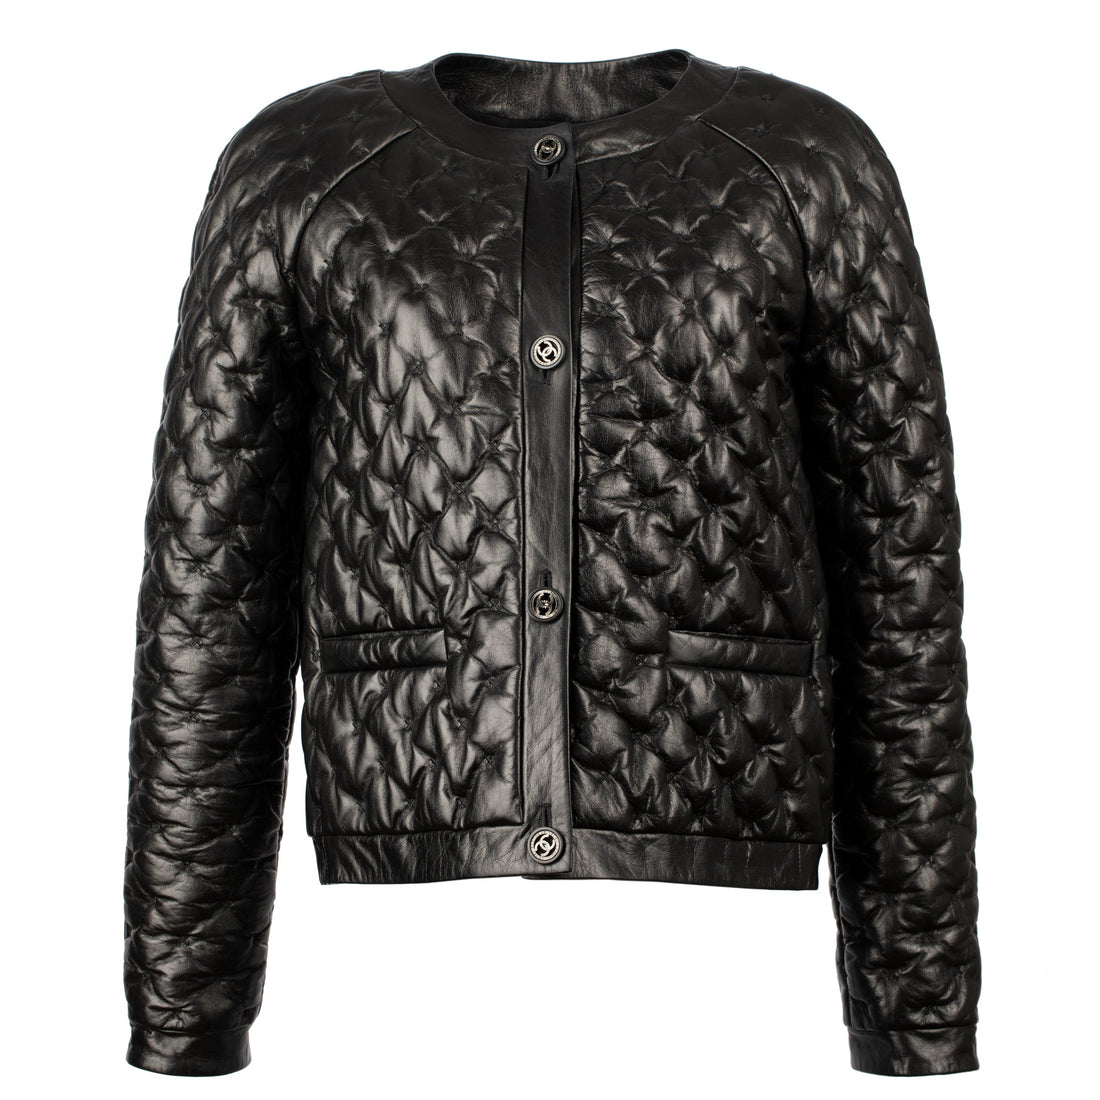 Chanel Iman Leather Jacket  Chanel Iman Leather Jacket Lookbook   StyleBistro